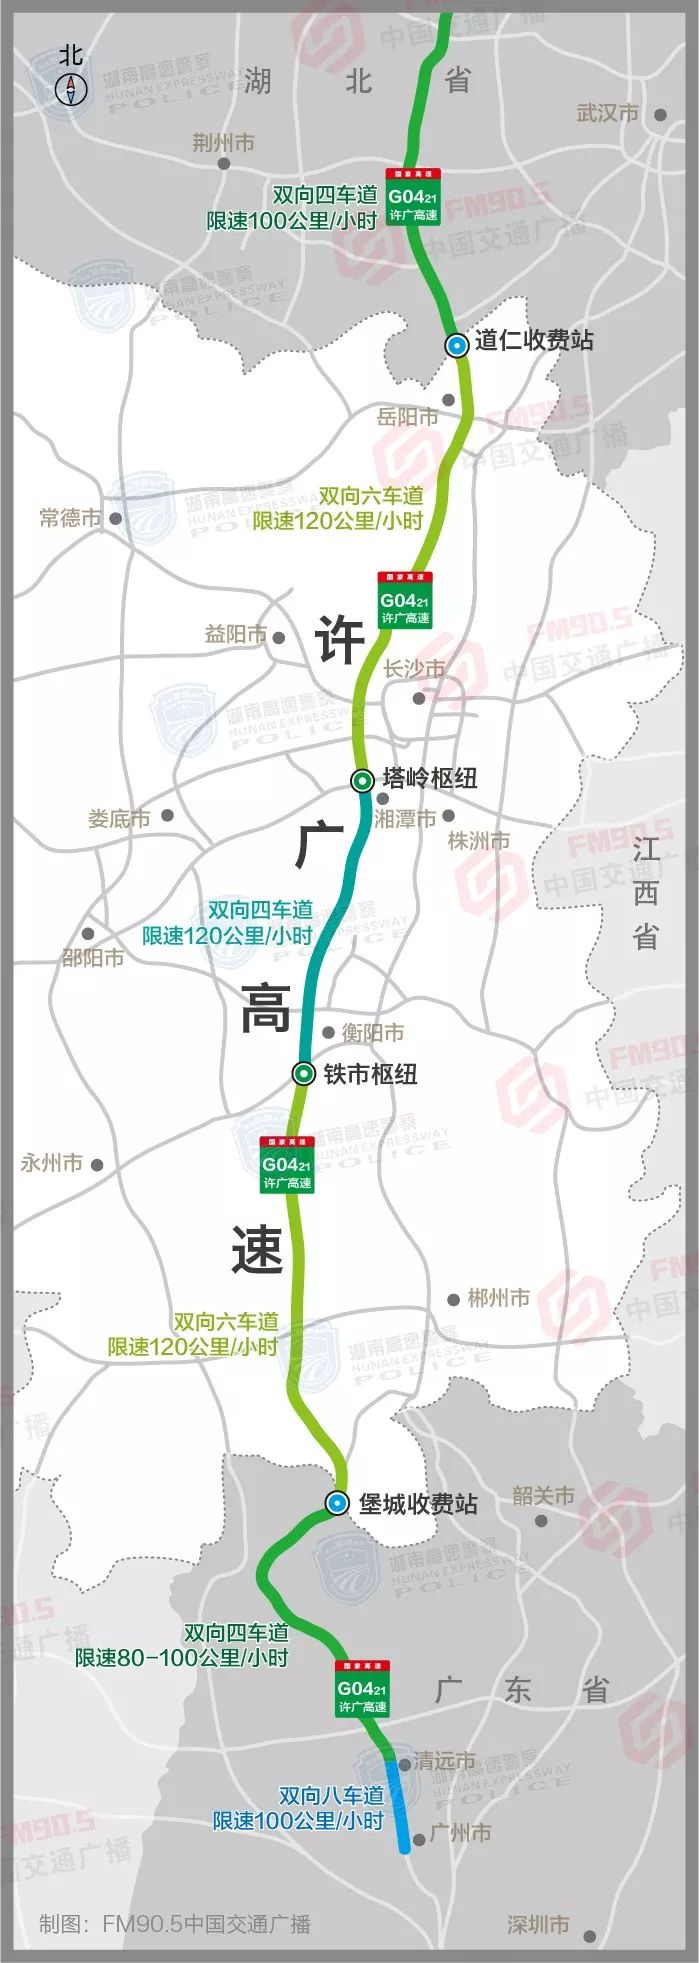 许广高速湖南段通行状况良好,车流量虽大,但通行有序,驾驶人朋友应